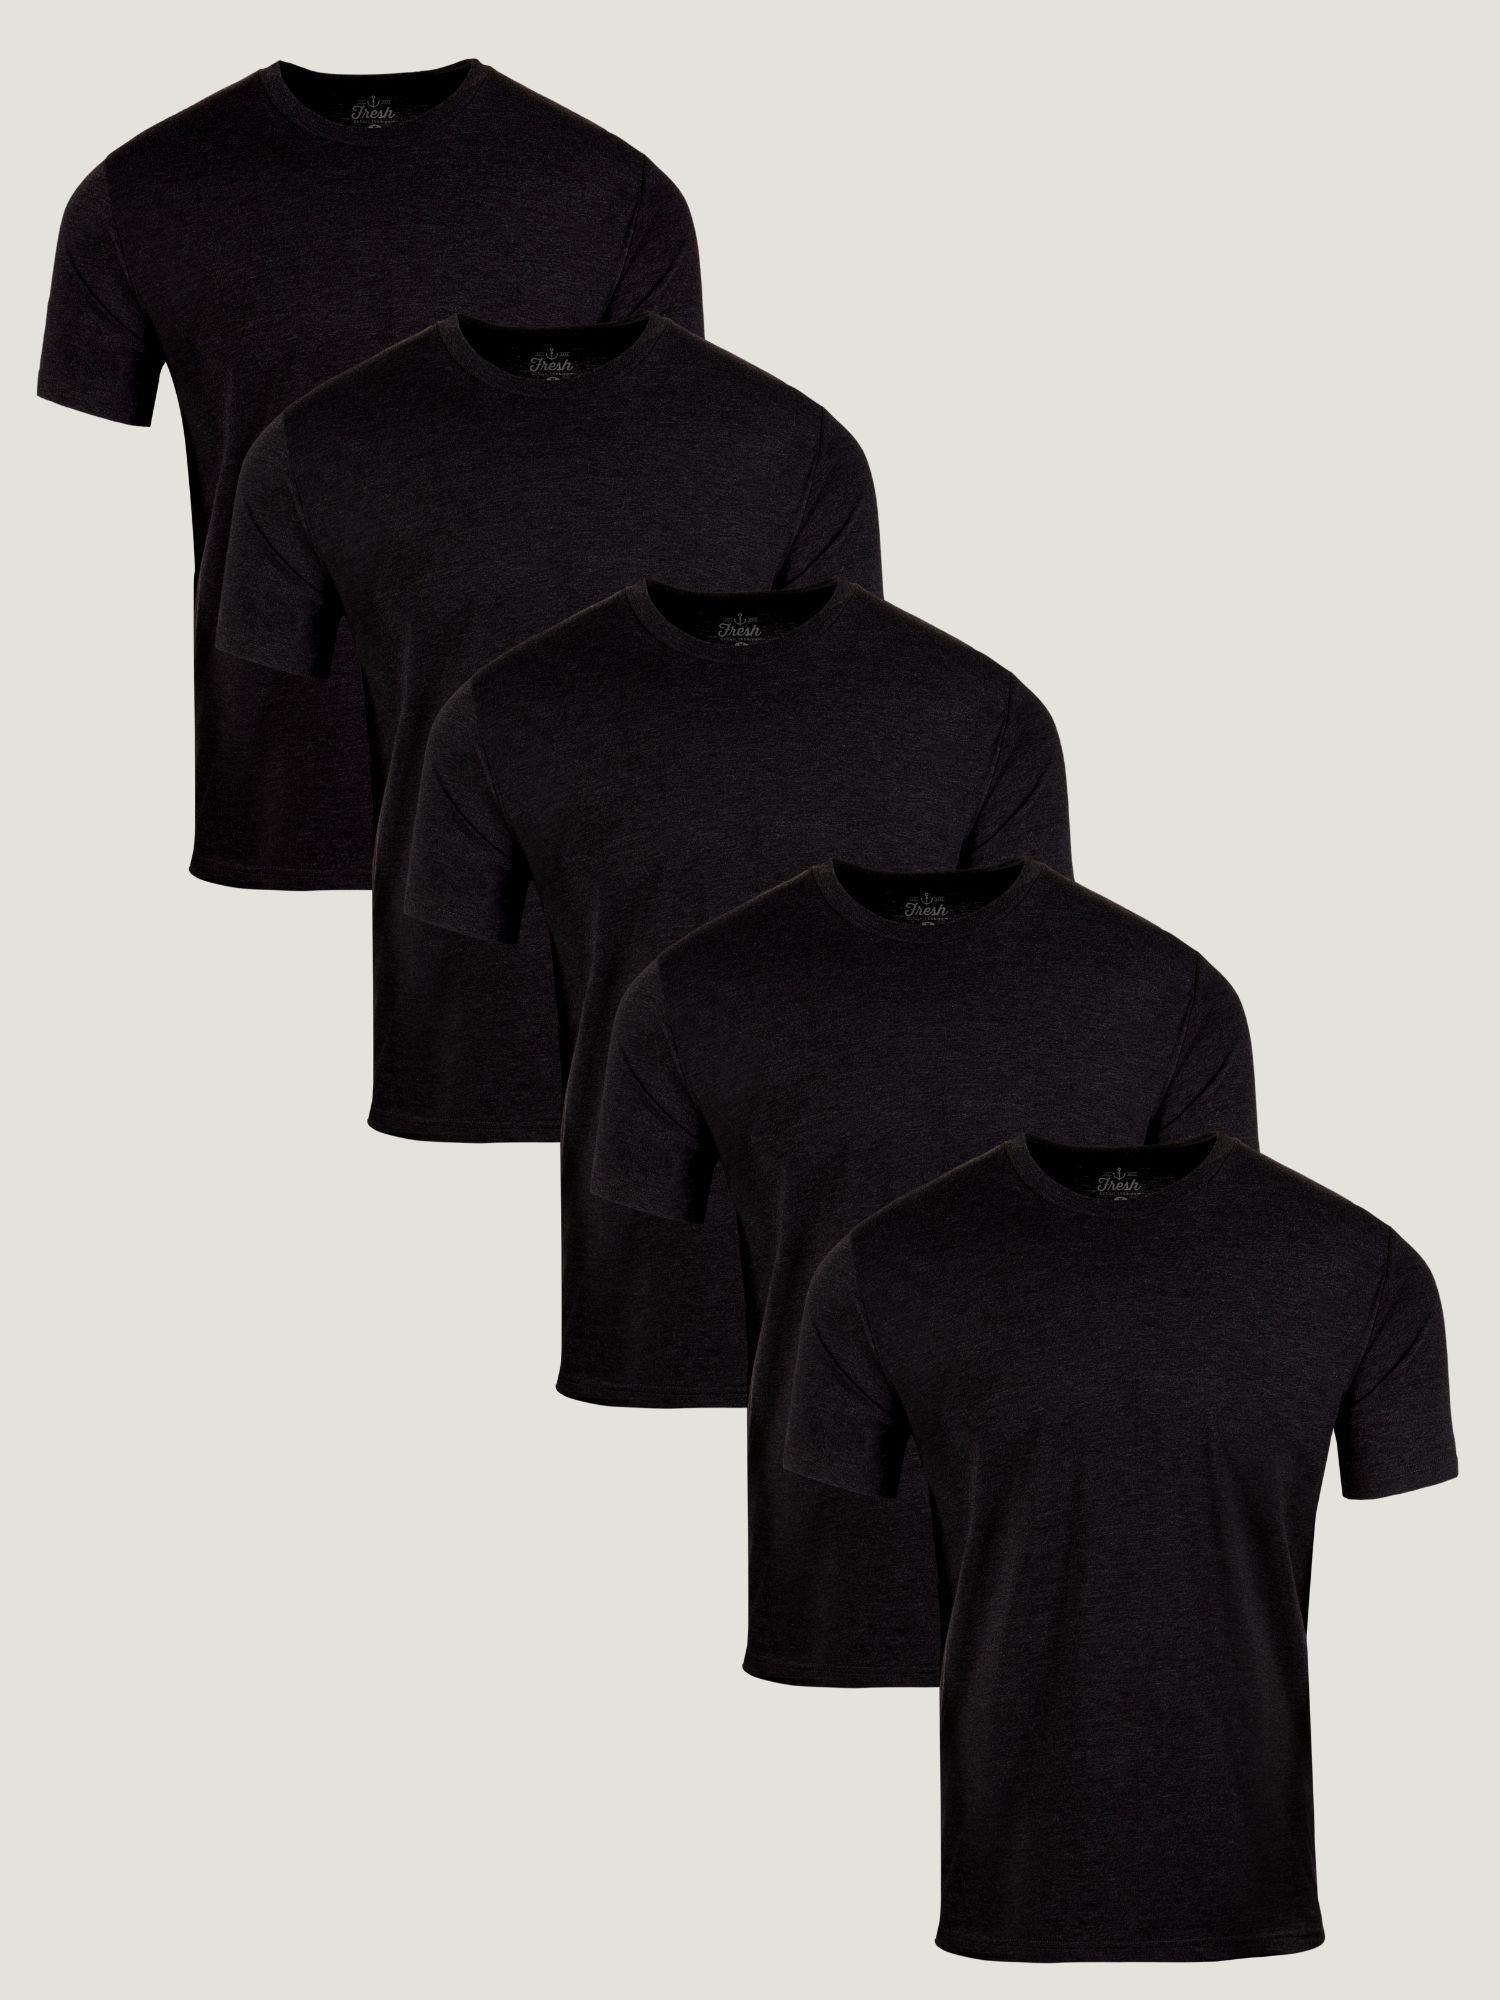 All Black Tee Shirt 5-Pack | Fresh Clean Threads